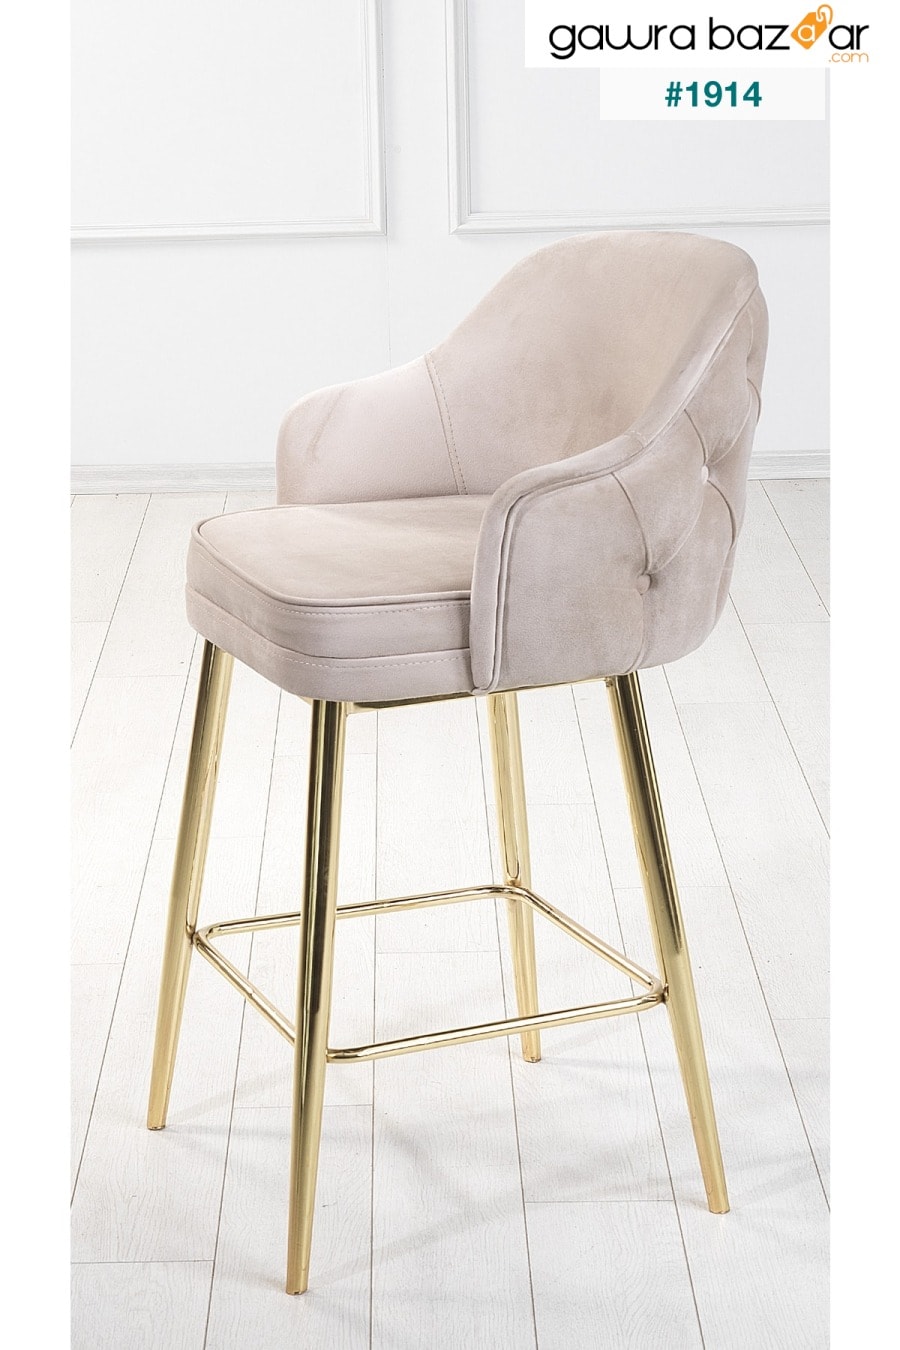 2 قطعة كرسي مطبخ وبار من تيتان أدا - كرسي مرتفع - قماش قابل للإزالة للوجه - أرجل ذهبية Pİ MOBİLYA 2